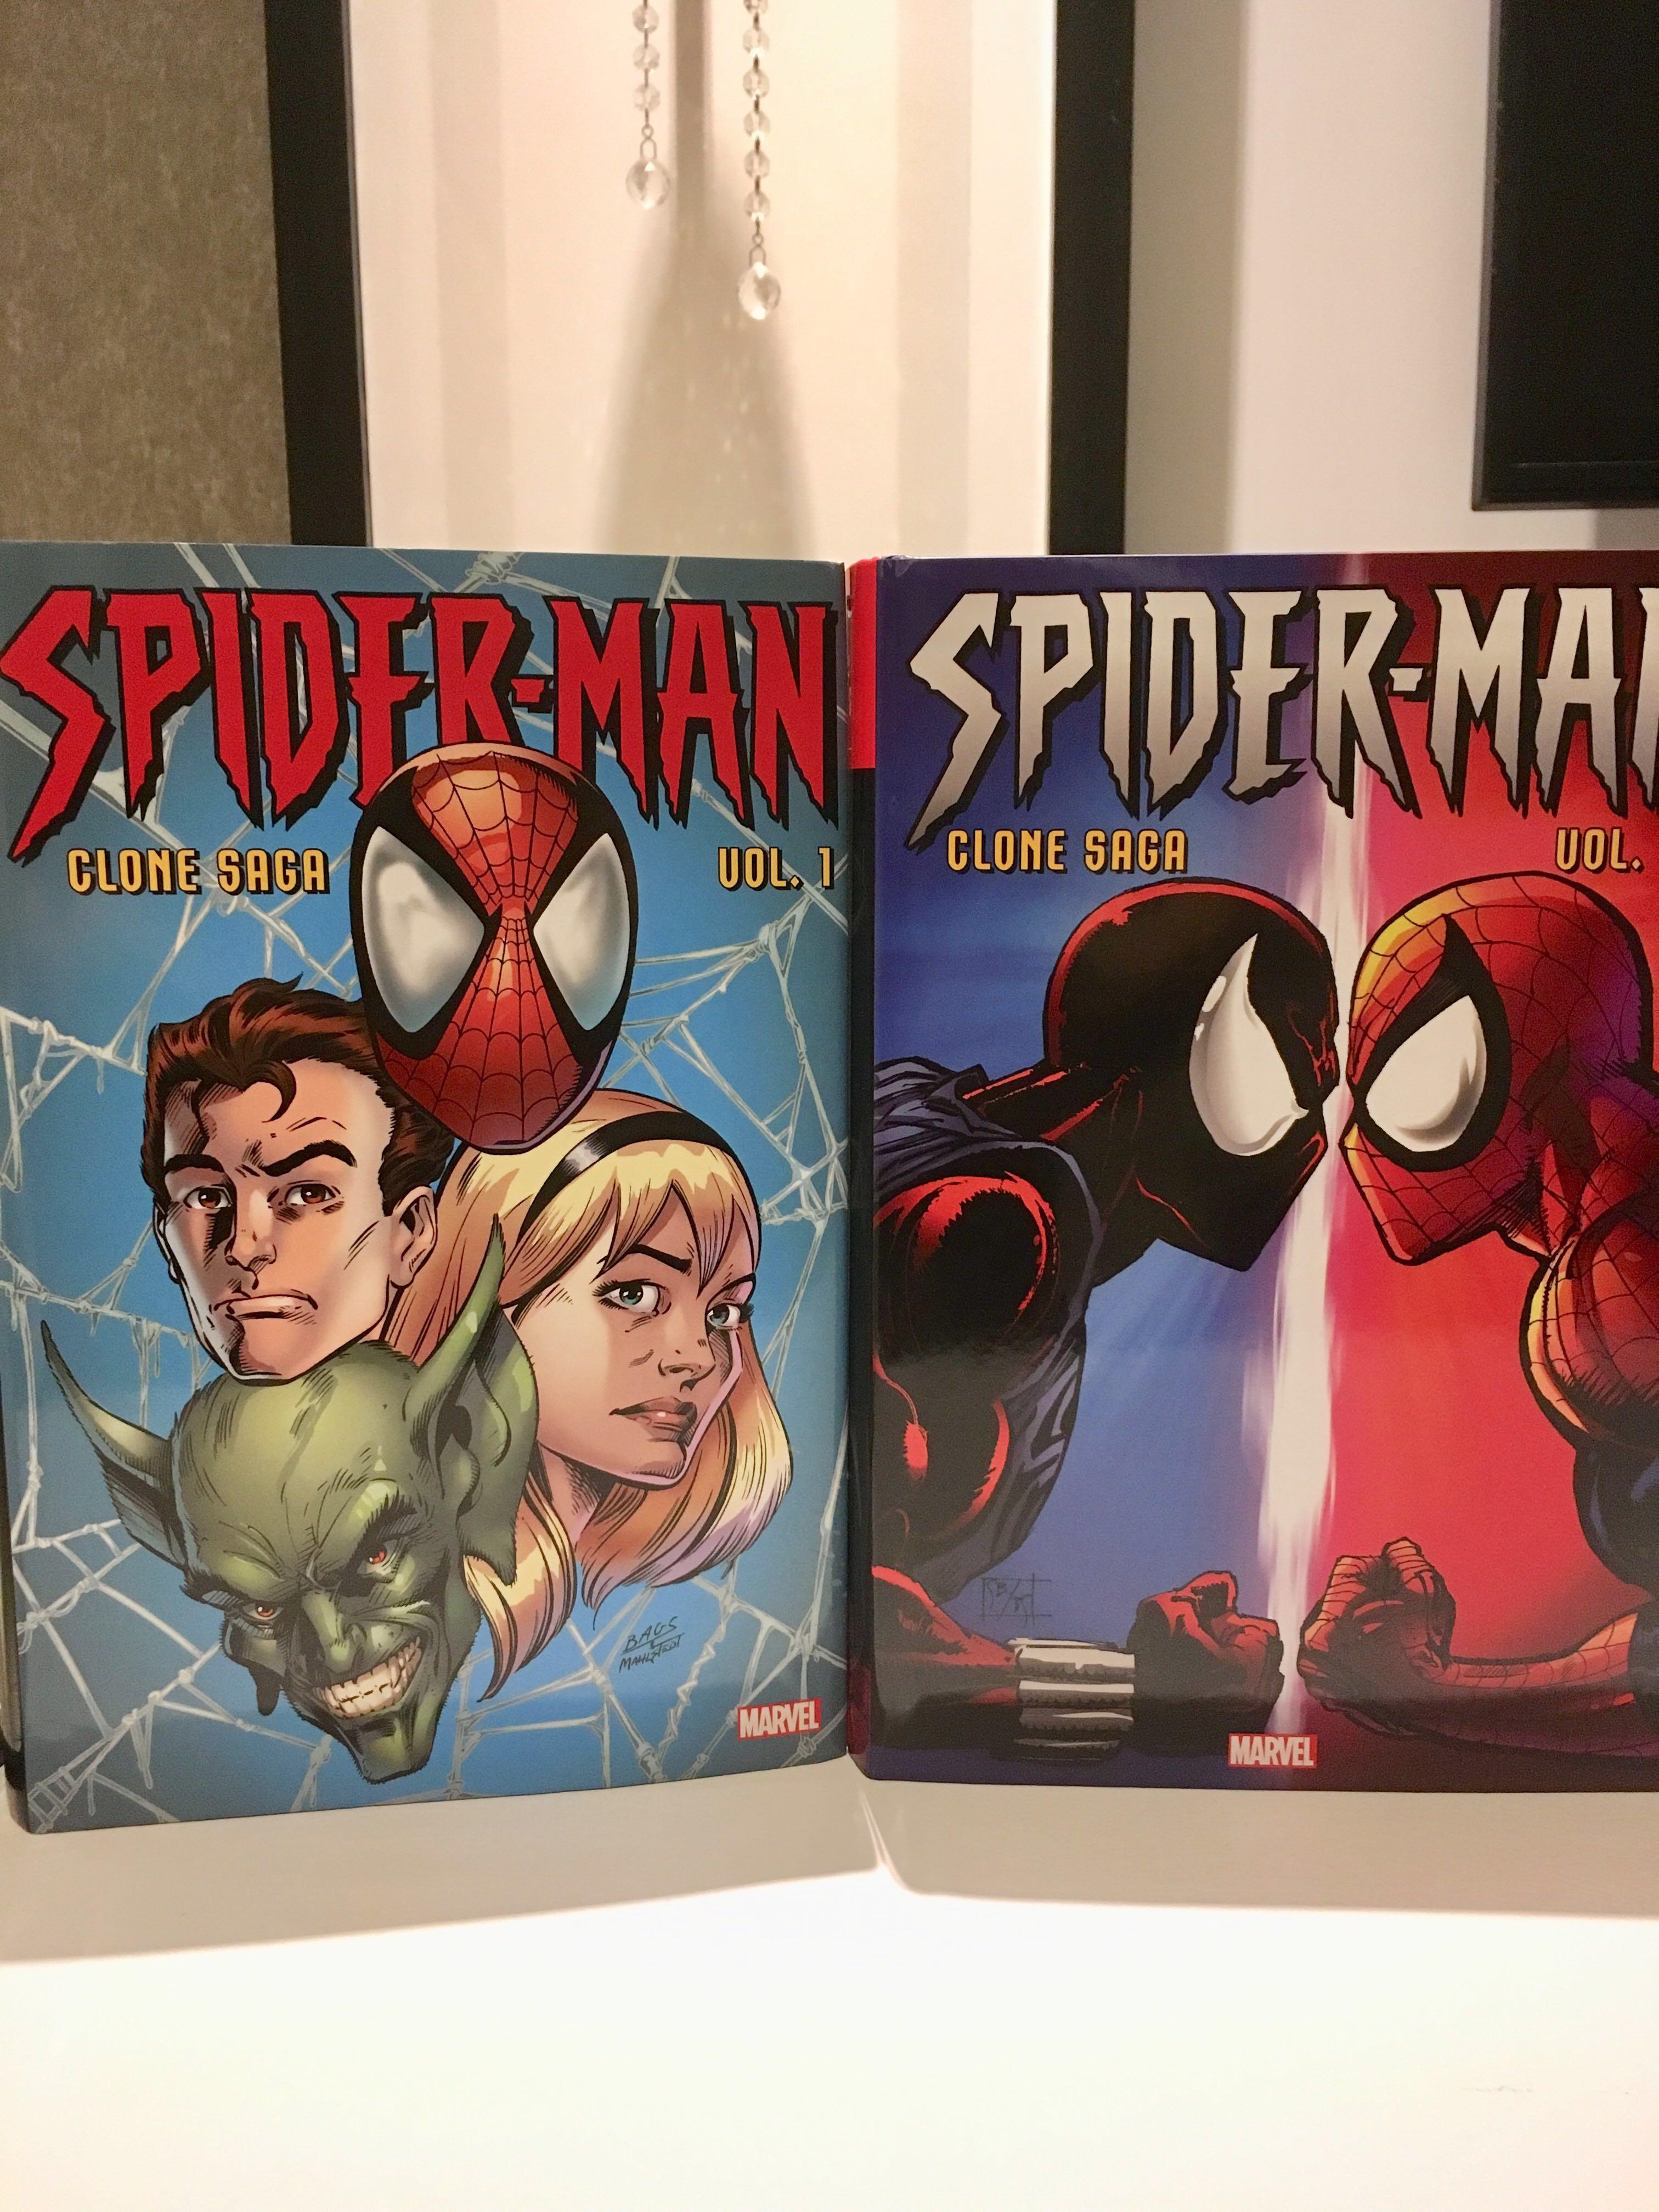 Spider-Man Omnibus set of 2 volumes Clone Saga